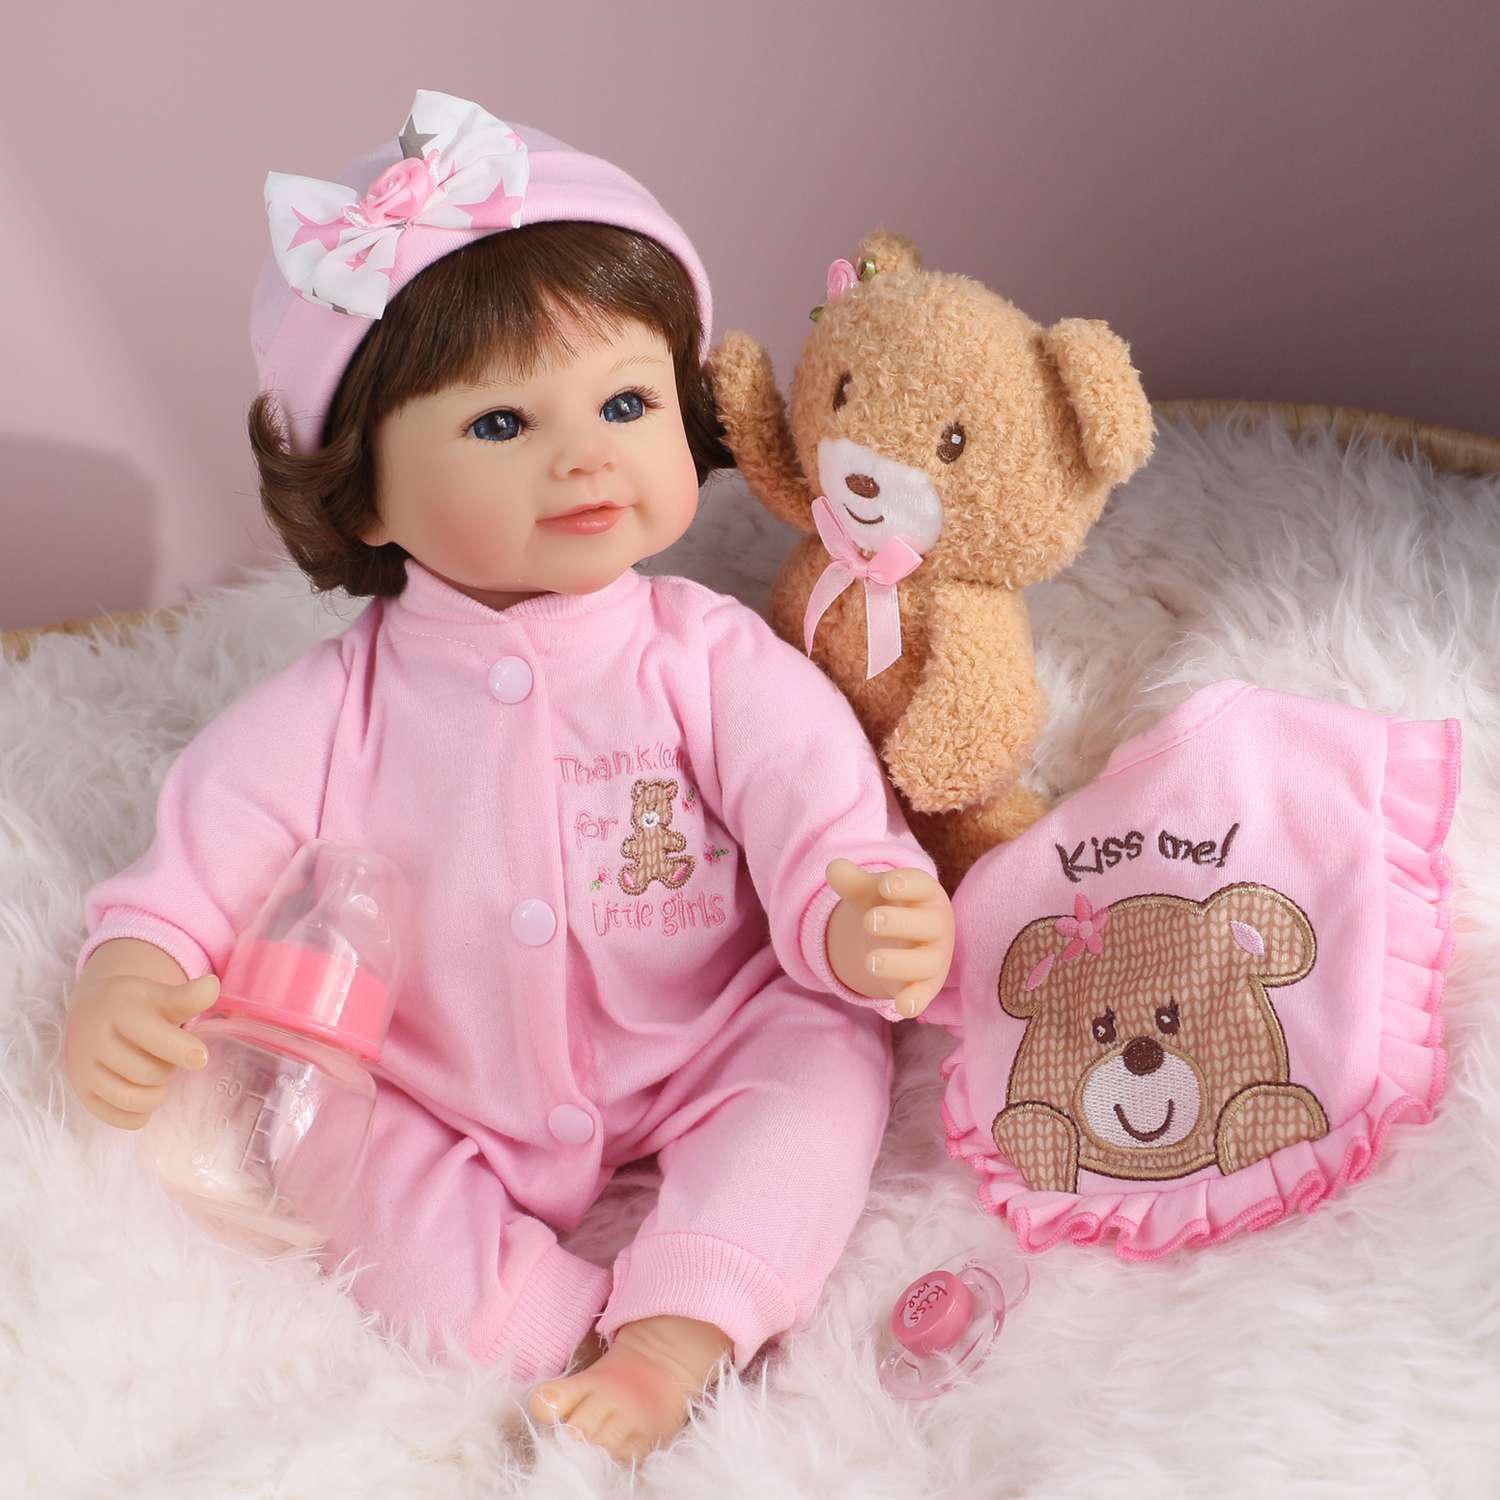 Кукла Реборн QA BABY Варвара девочка большая пупс набор игрушки для девочки 42 см 45008 - фото 7